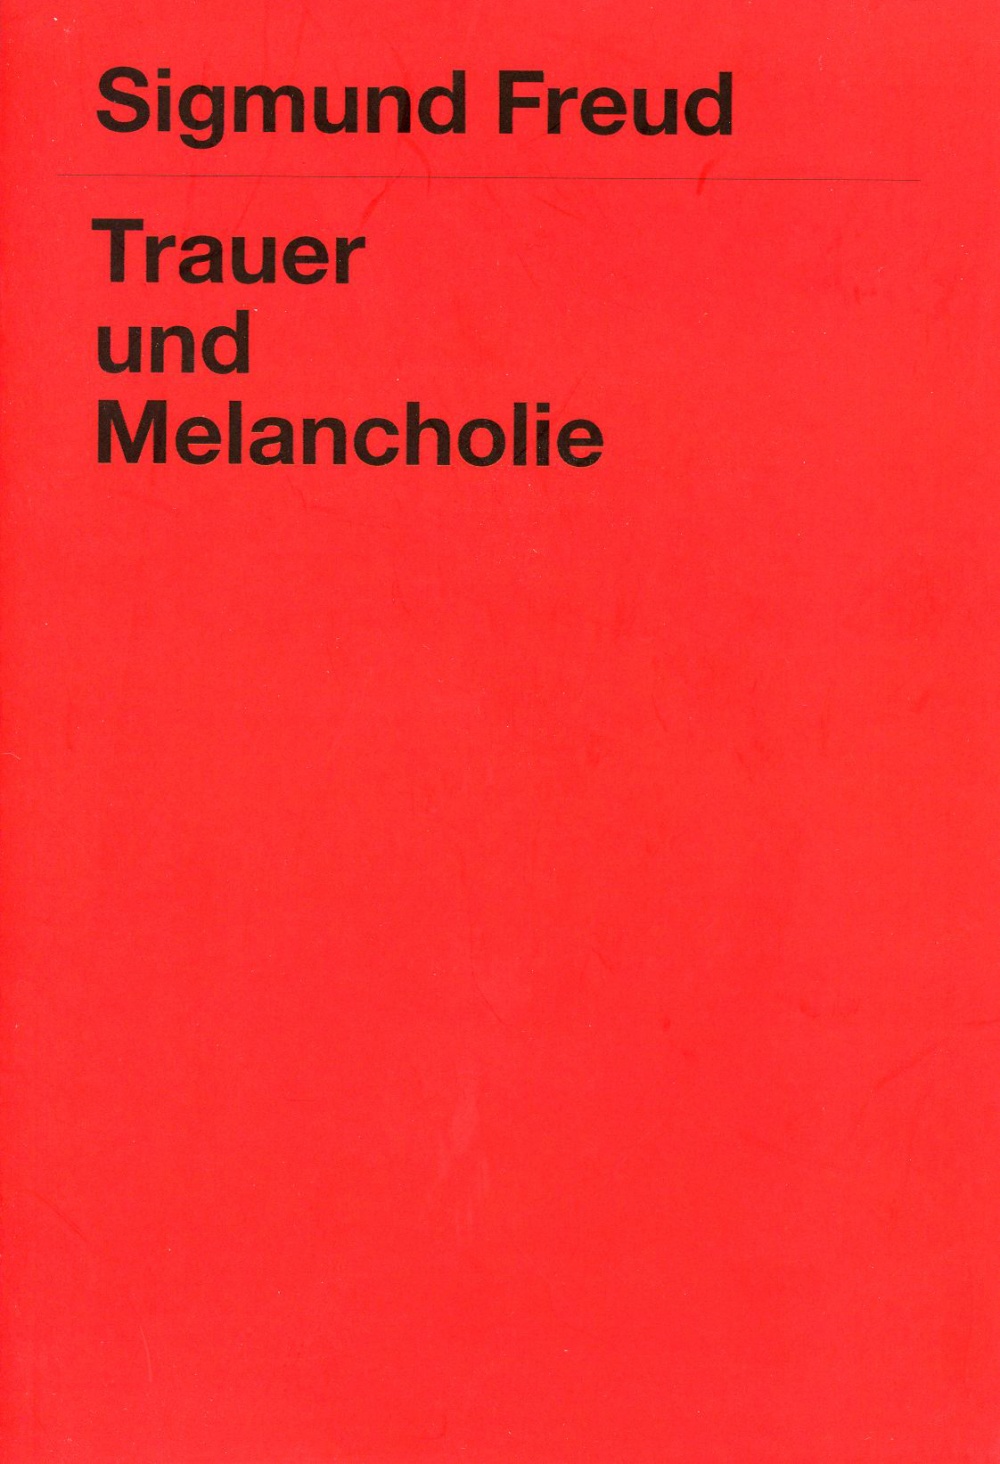 Trauer und Melancholie (Mourning and Melancholia)